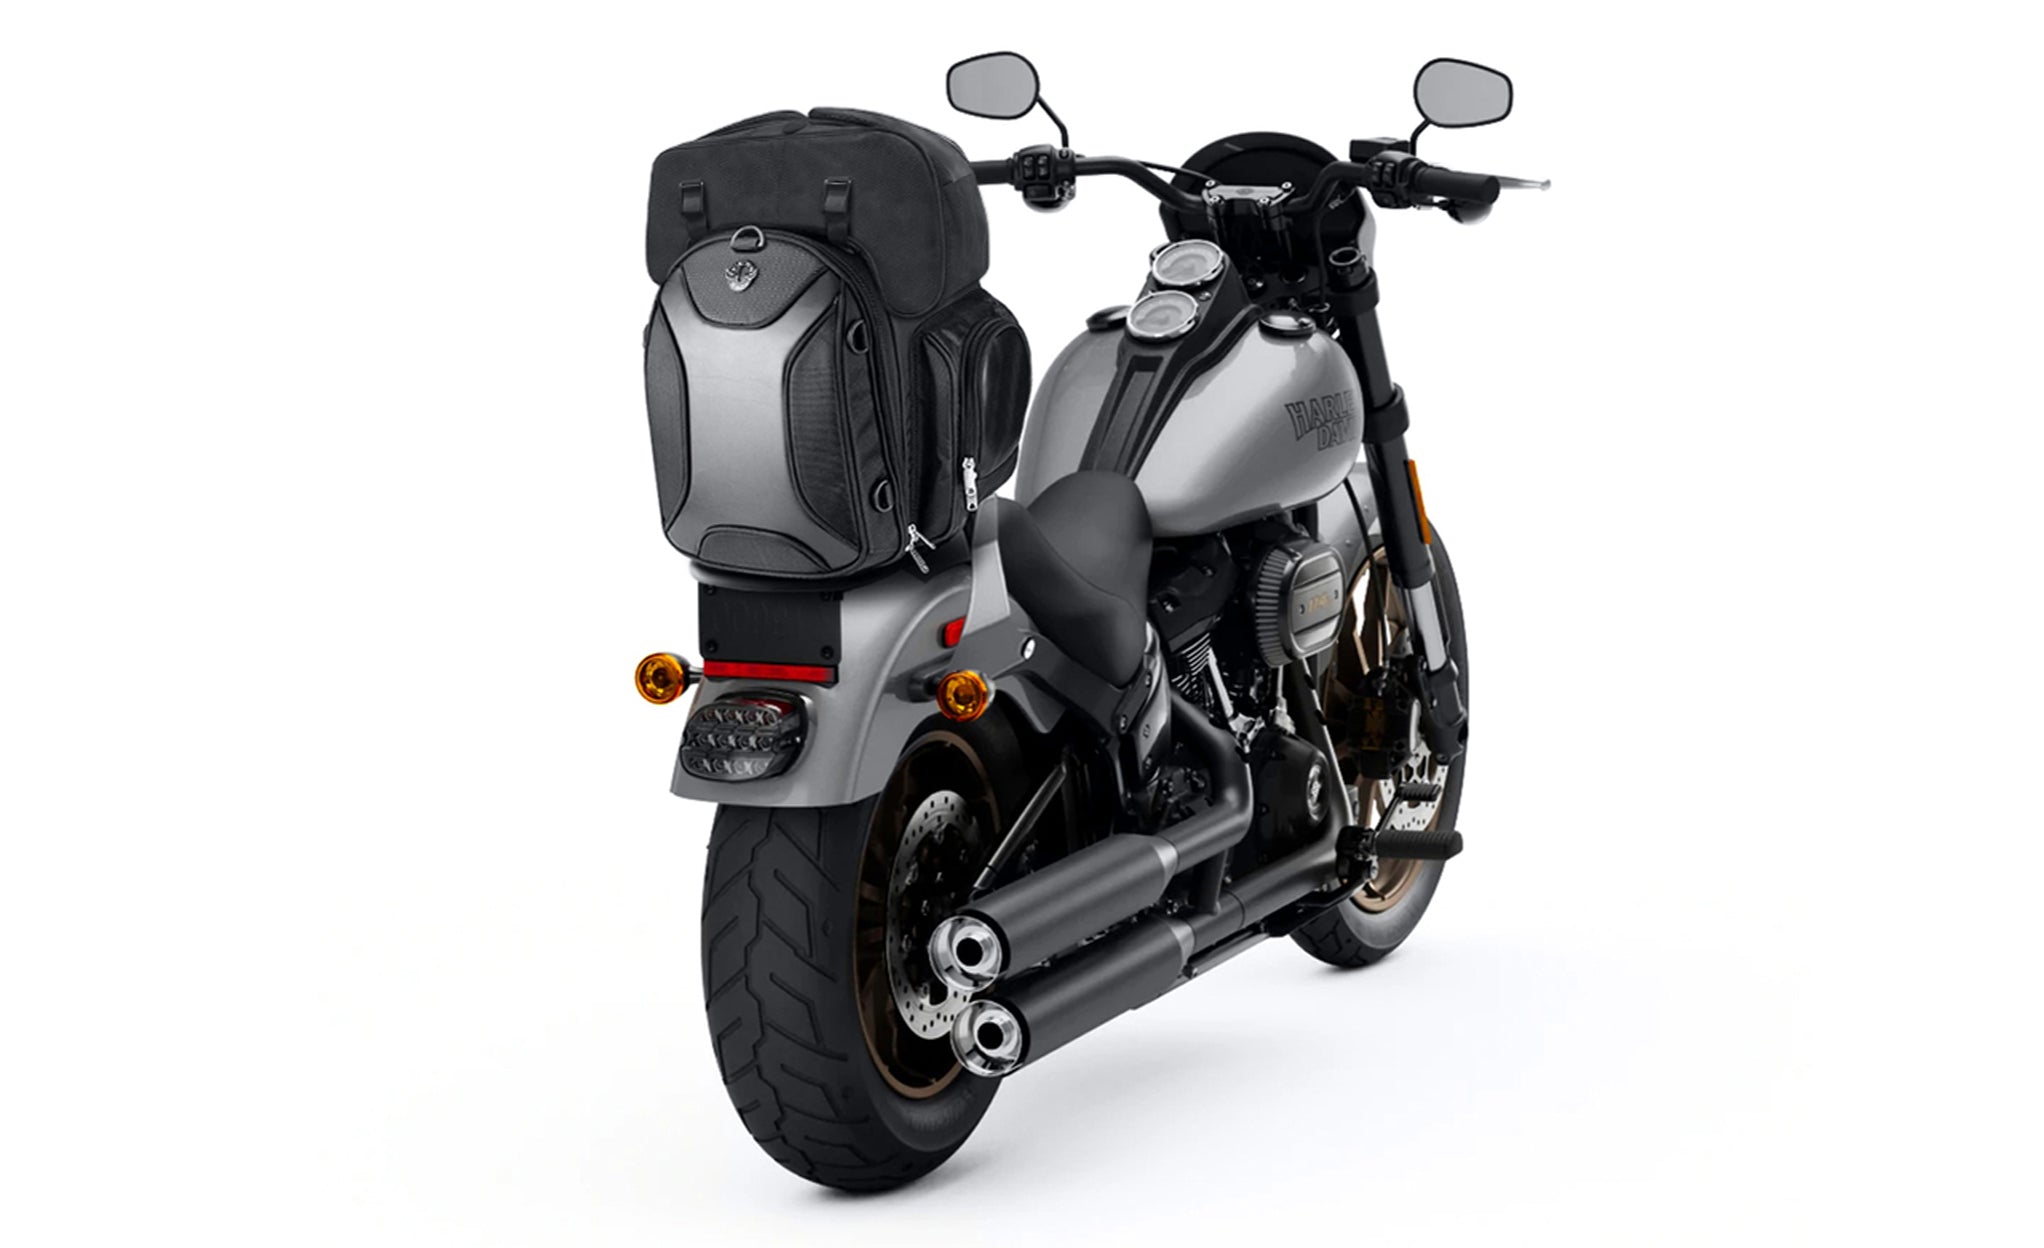 Viking Dagr Extra Large Suzuki Motorcycle Sissy Bar Bag Bag on Bike View @expand